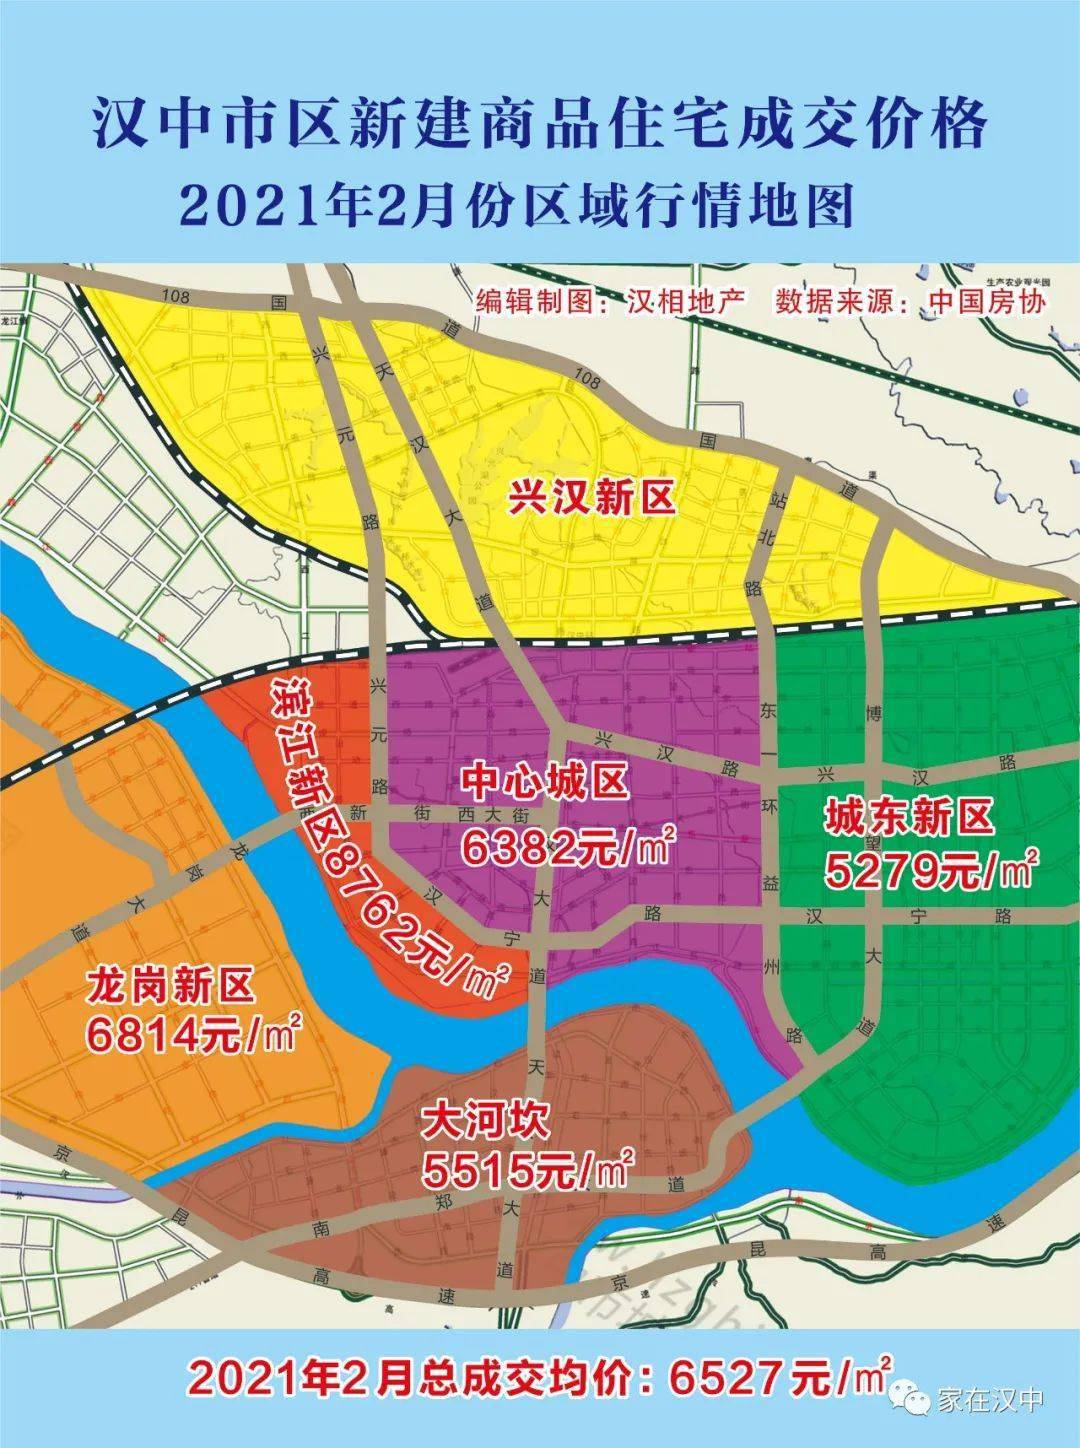 汉中市区新盘成交价格地图 泄密版 21年2月份 劳动西路